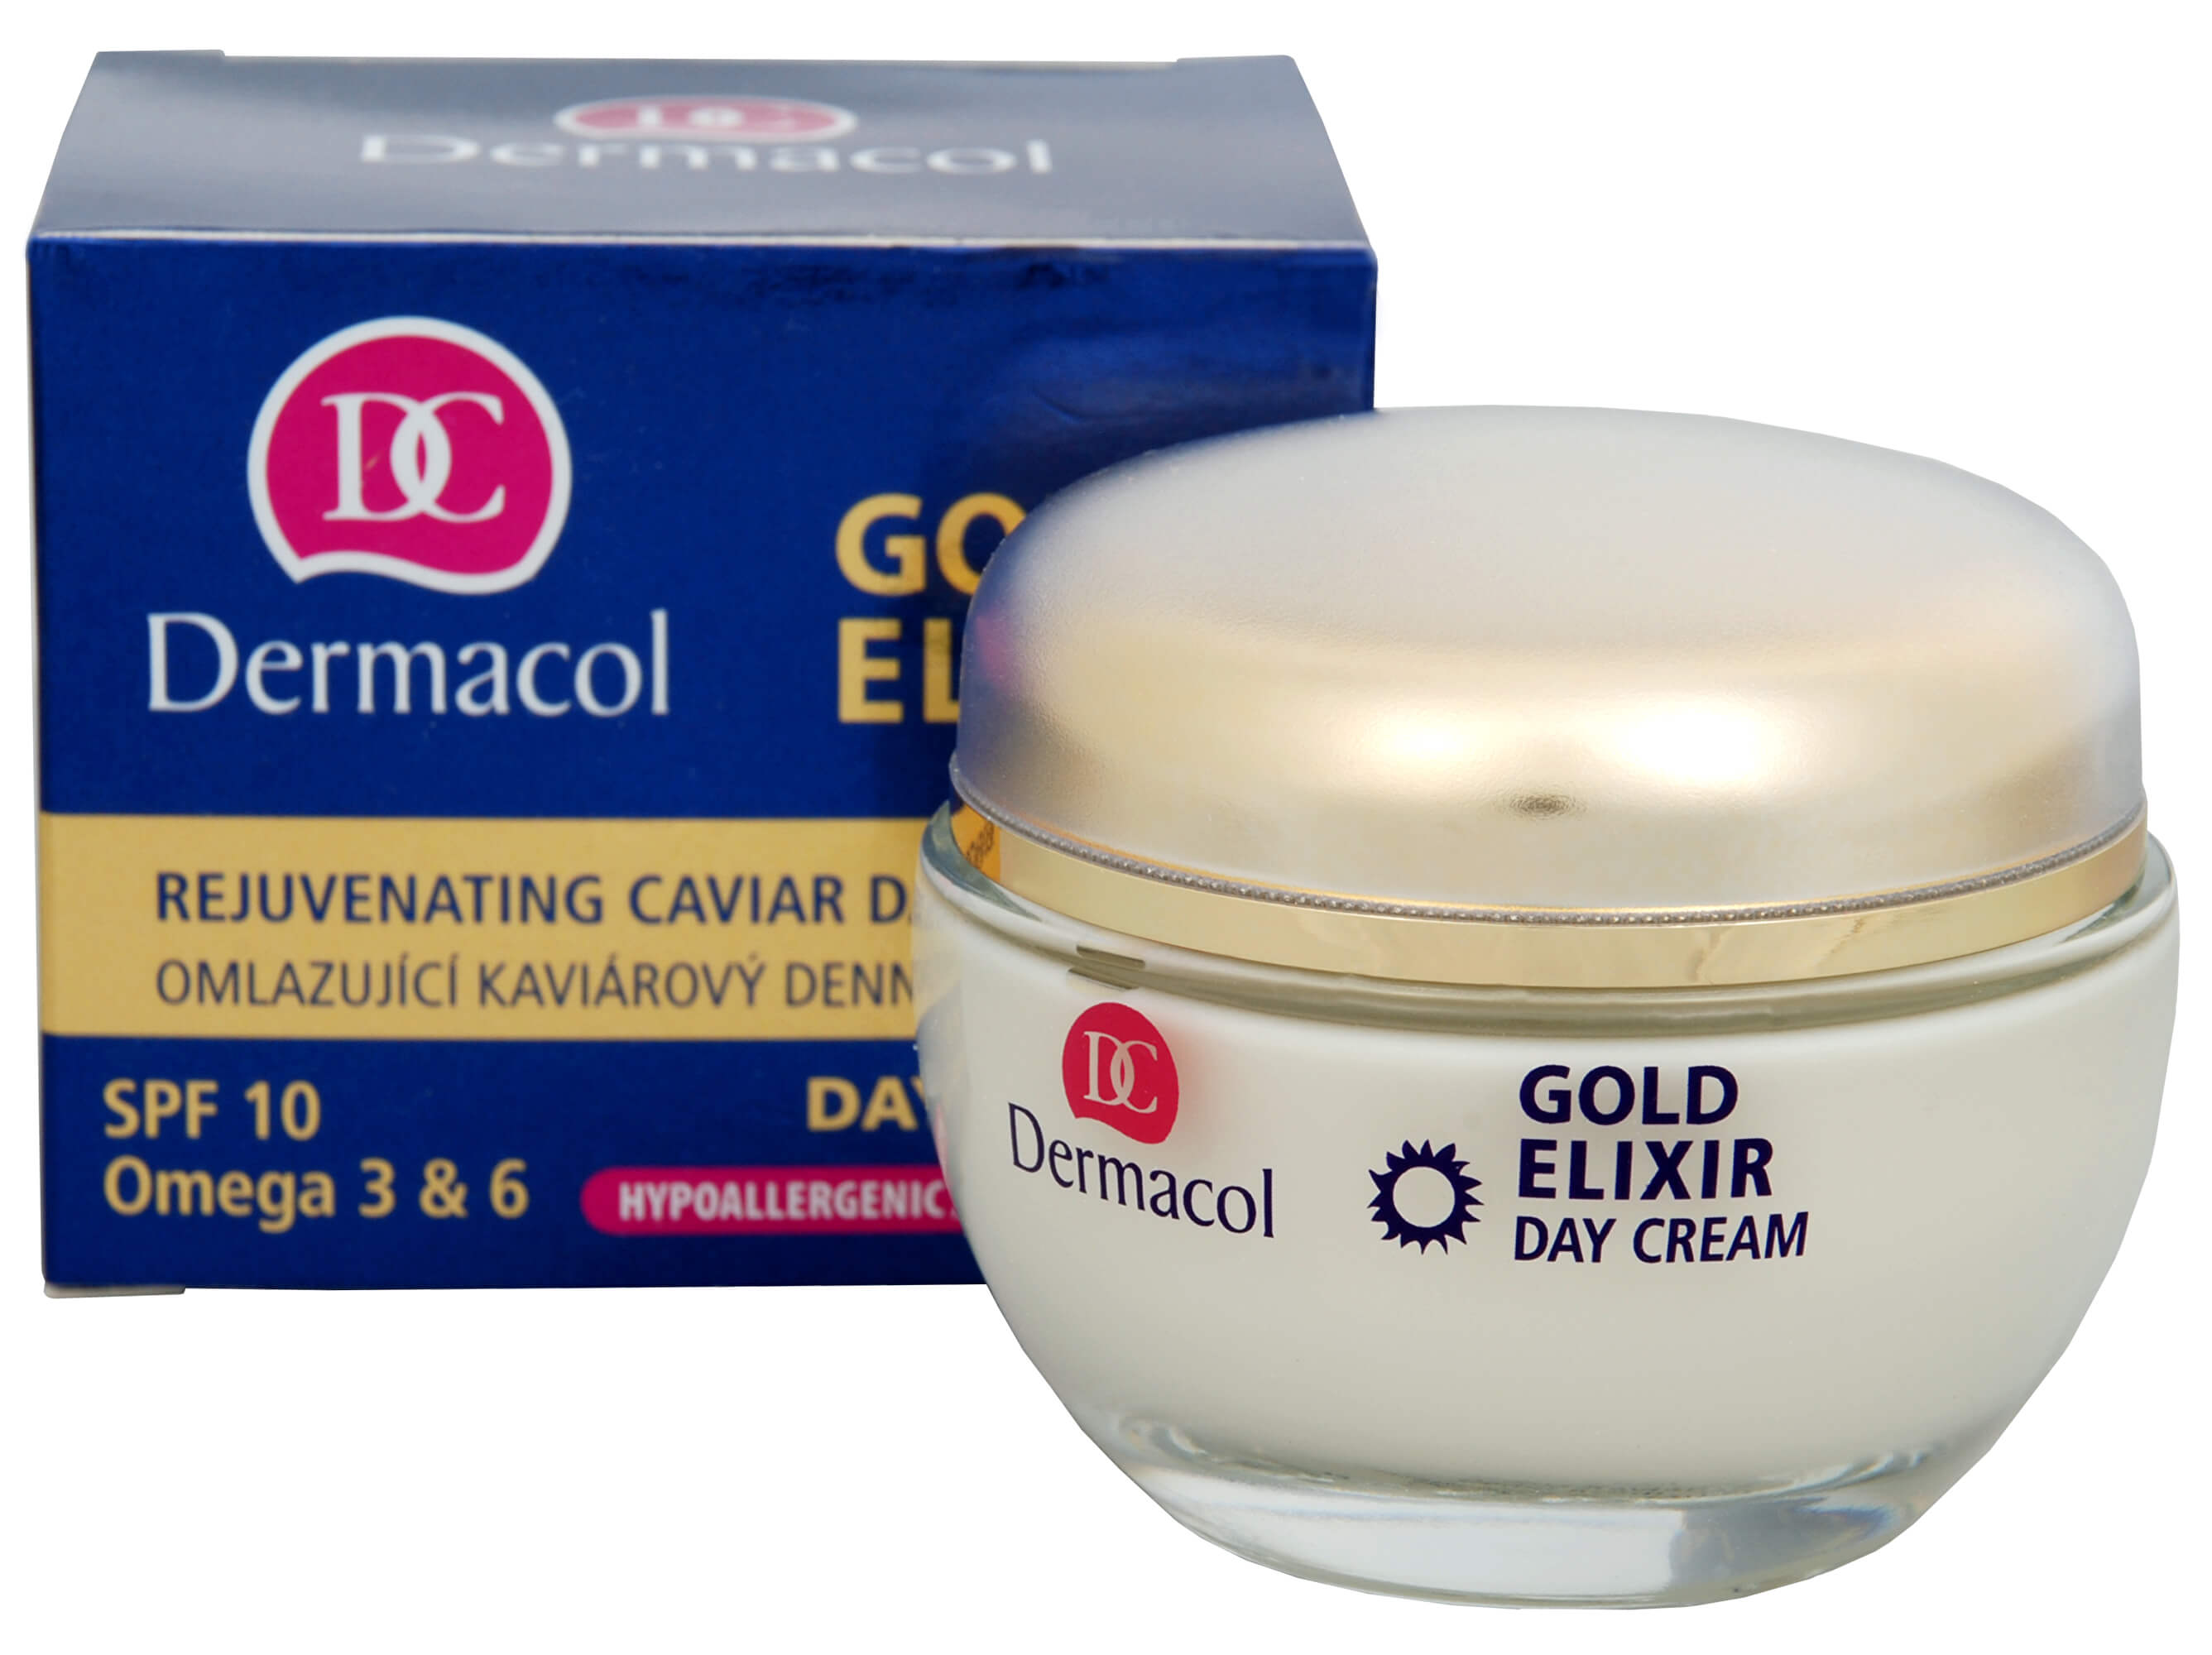 Dermacol Omlazující kaviárový denní krém SPF 10 (Gold Elixir Day Cream) 50 ml